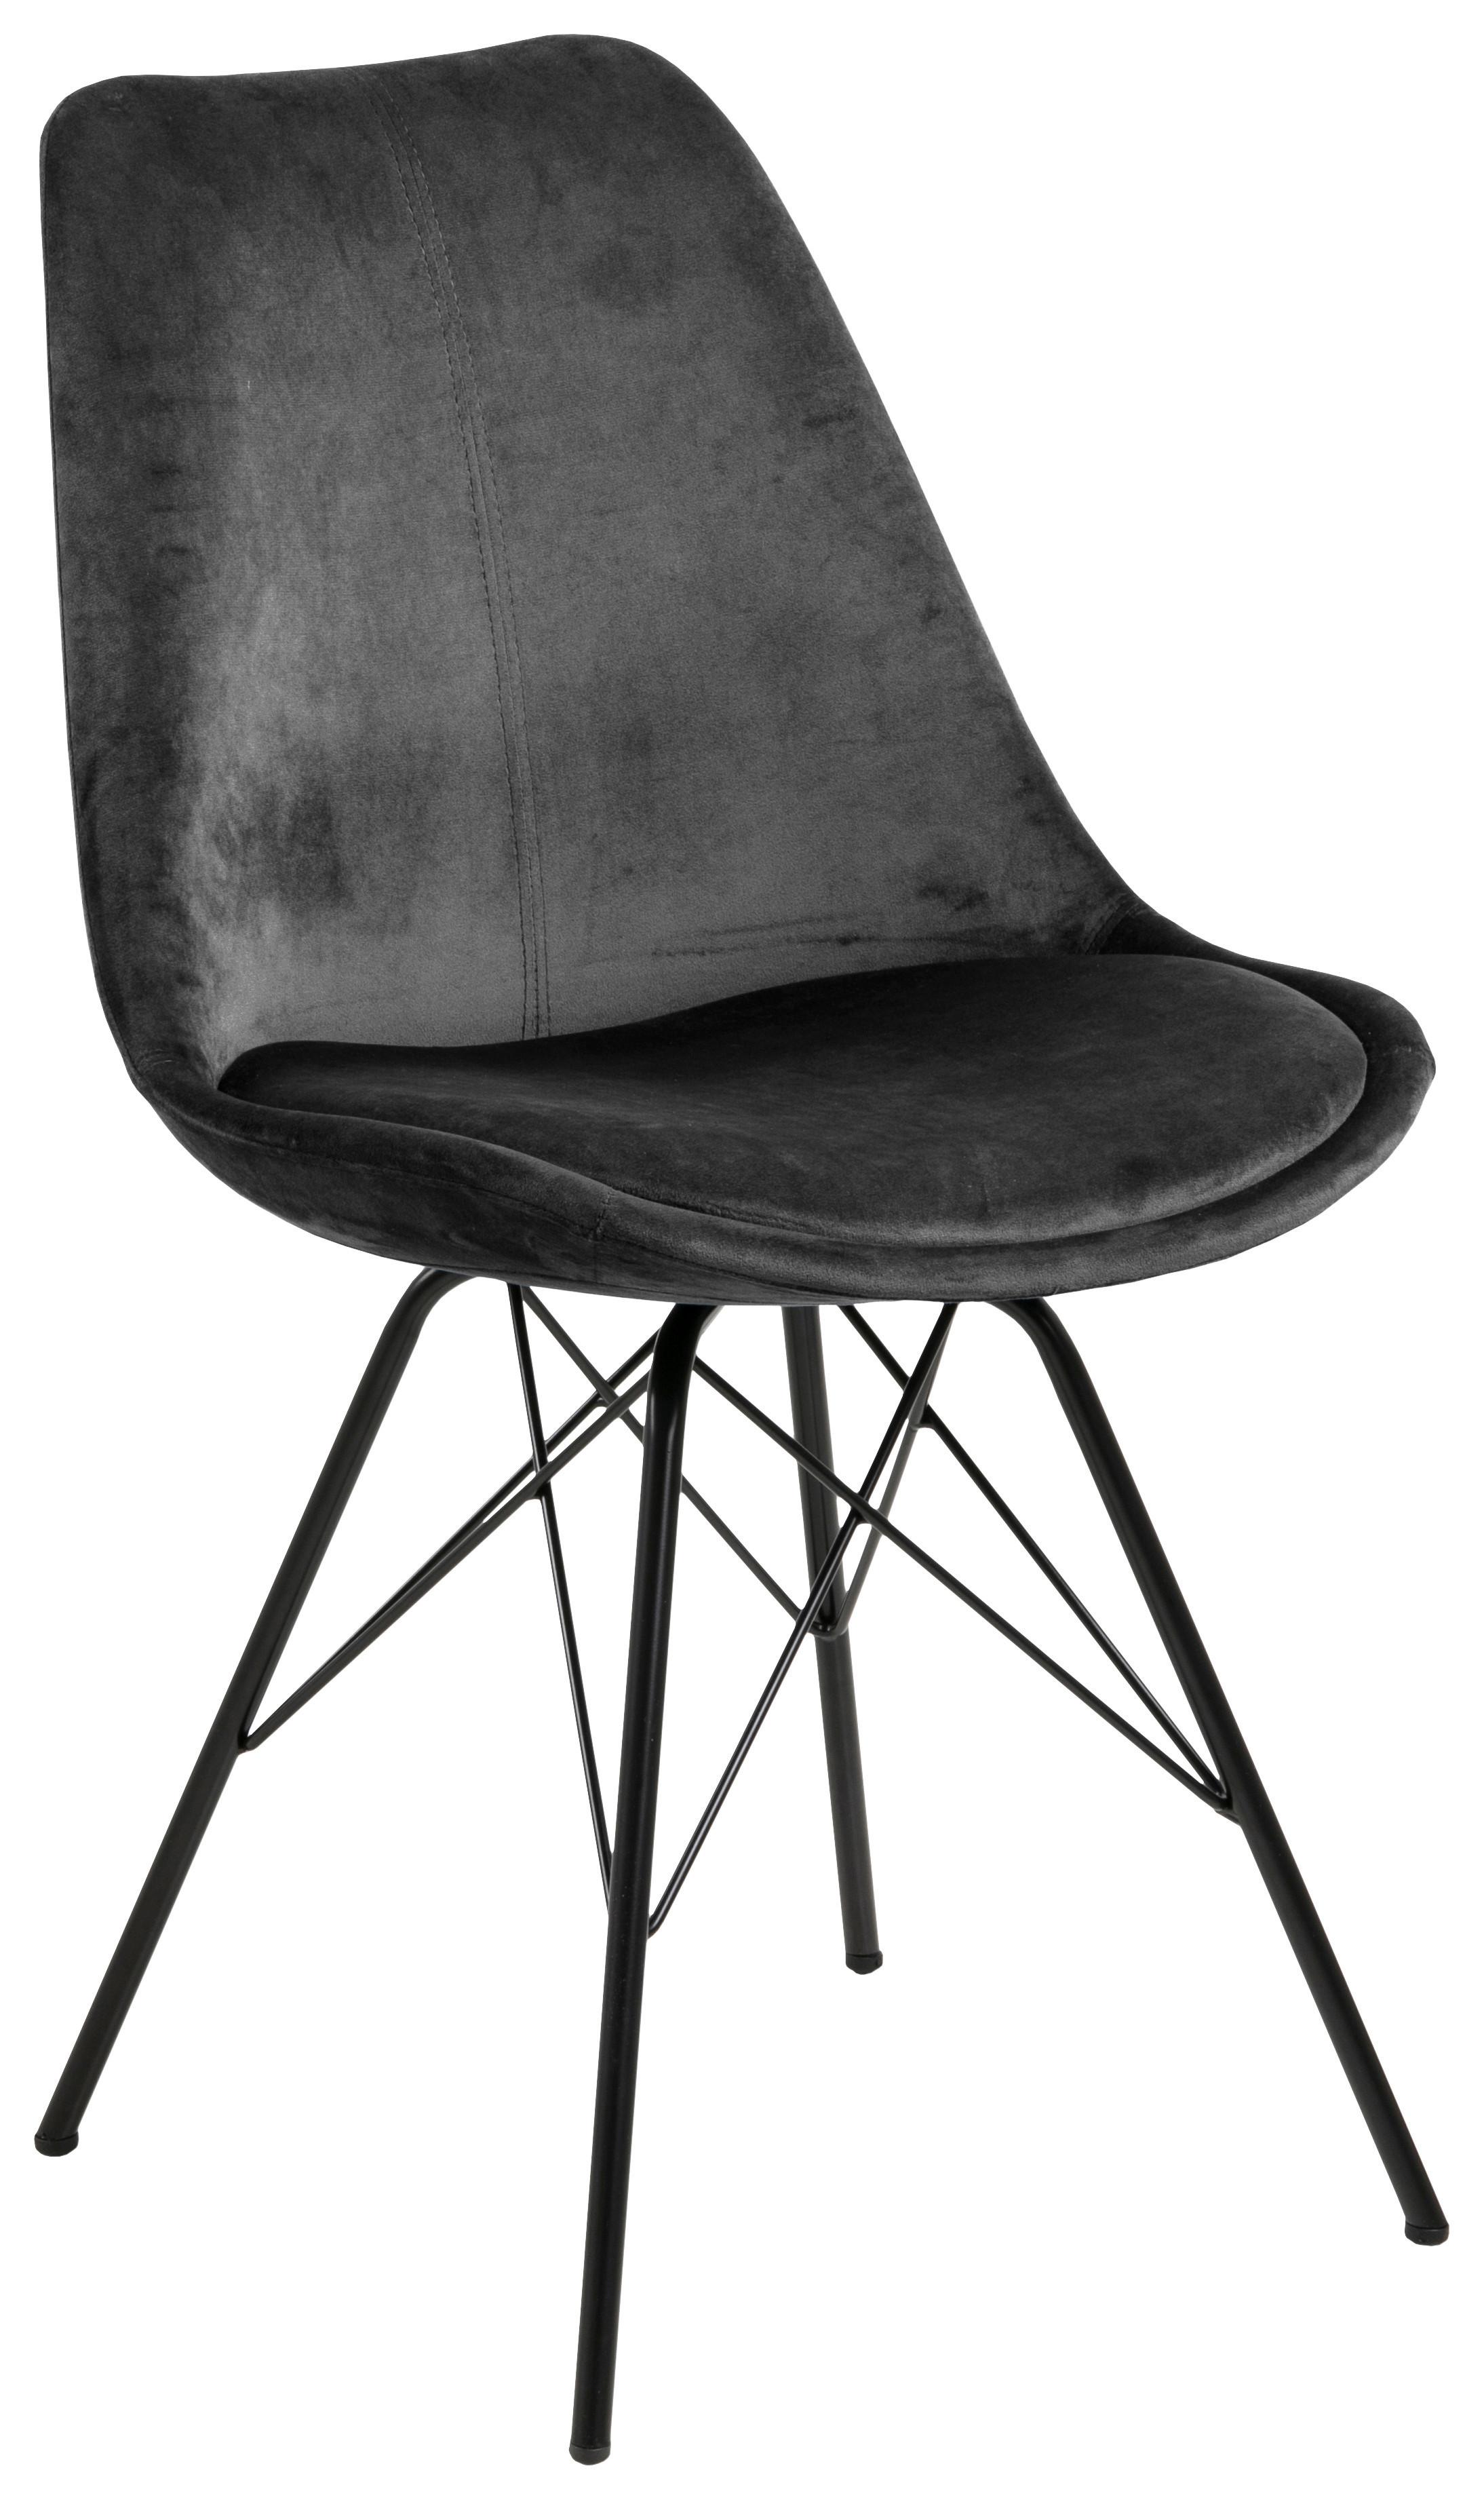 Jídelní Židle Eris Tmavě Šedá - černá/tmavě šedá, Trend, kov/textil (48,5/85,5/54cm) - Carryhome